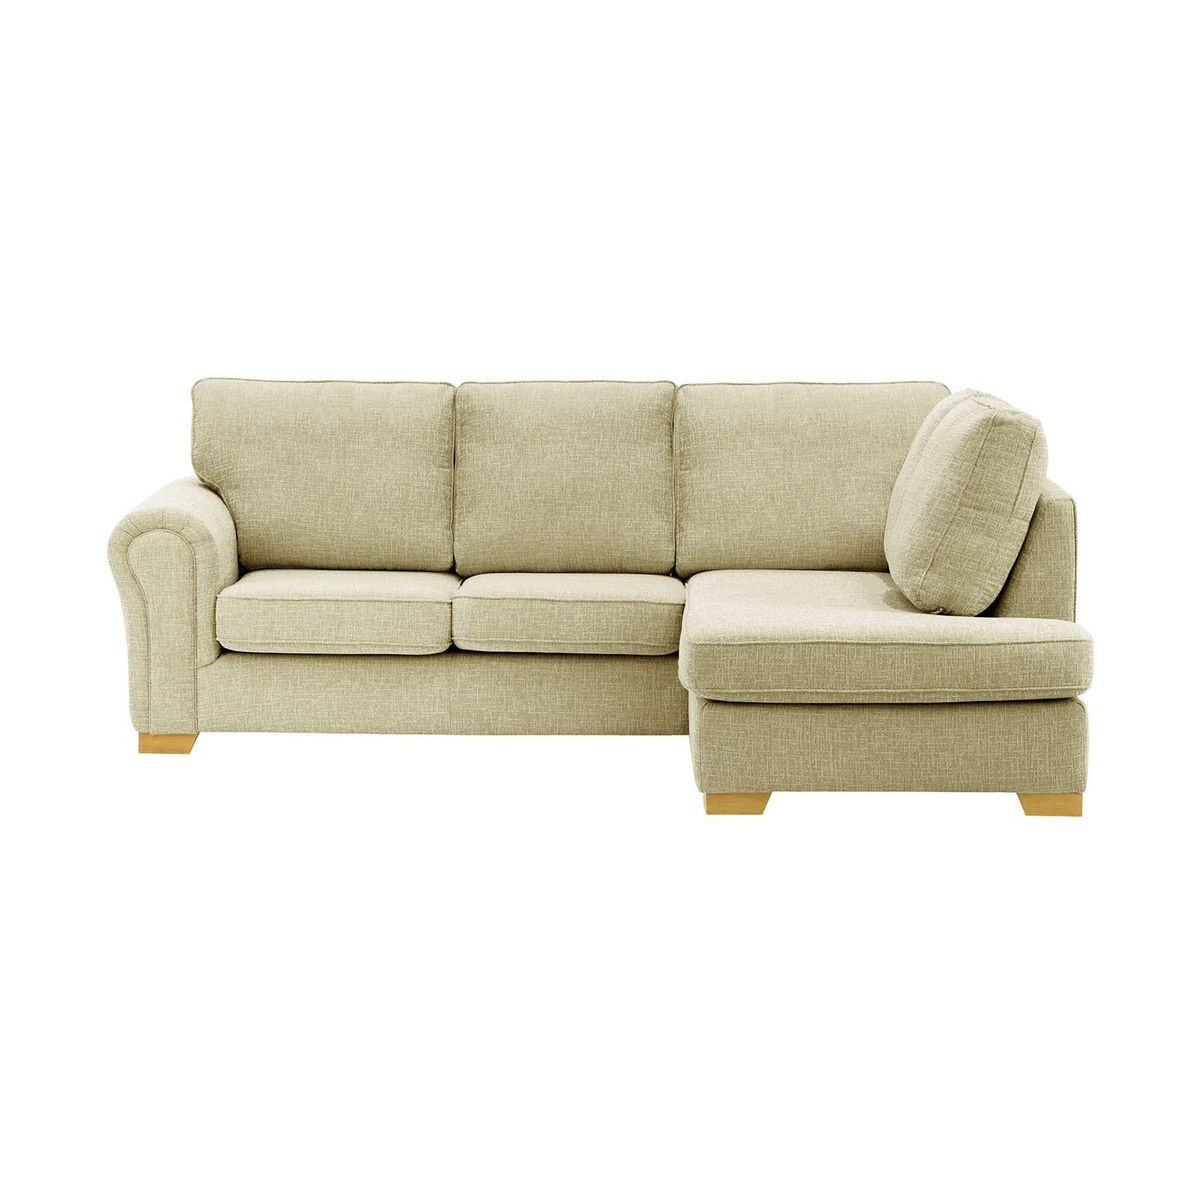 Bonna Right Hand Corner Sofa, taupe, Leg colour: like oak - image 1